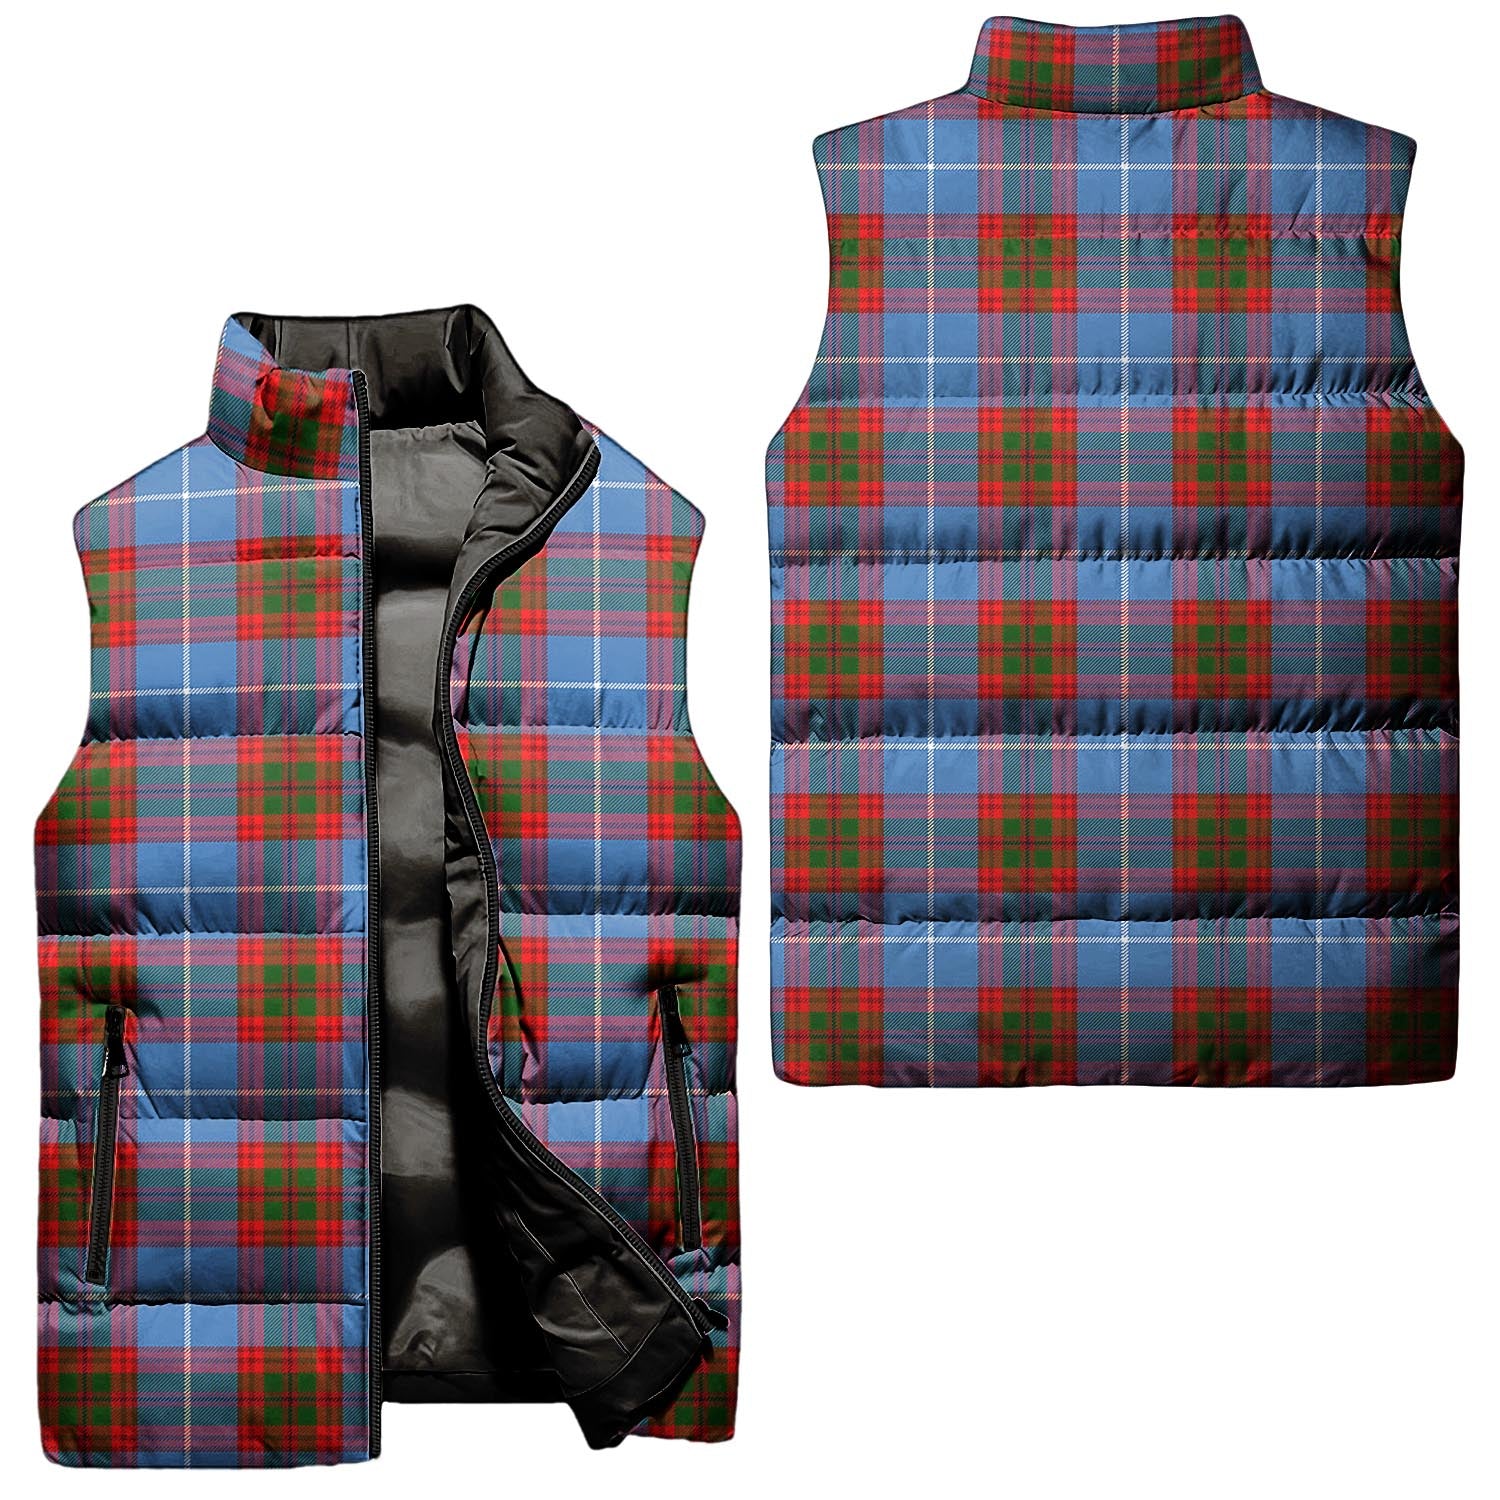 preston-tartan-puffer-vest-tartan-plaid-sleeveless-down-jacket